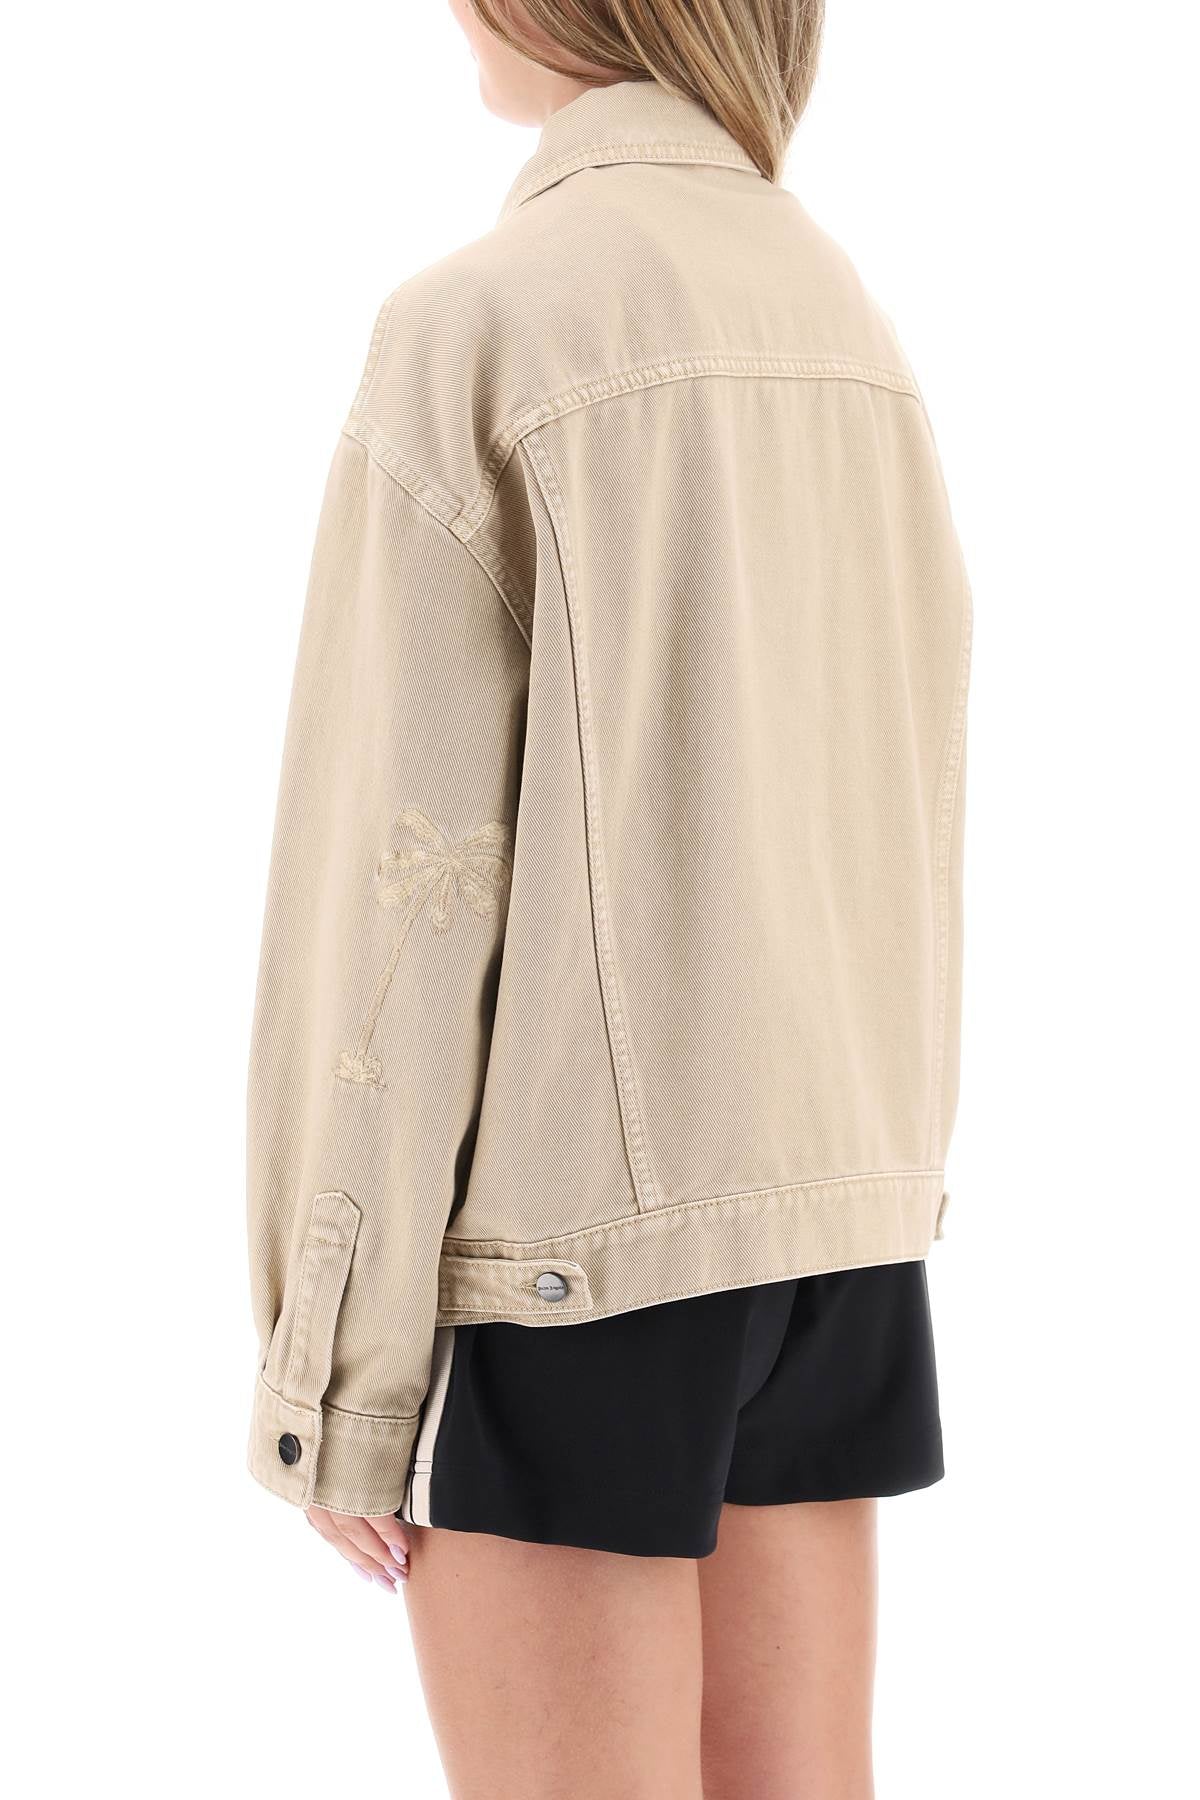 寬大版荷蘭鬆質棉牛仔夾克 印有同色調椰子樹刺繡